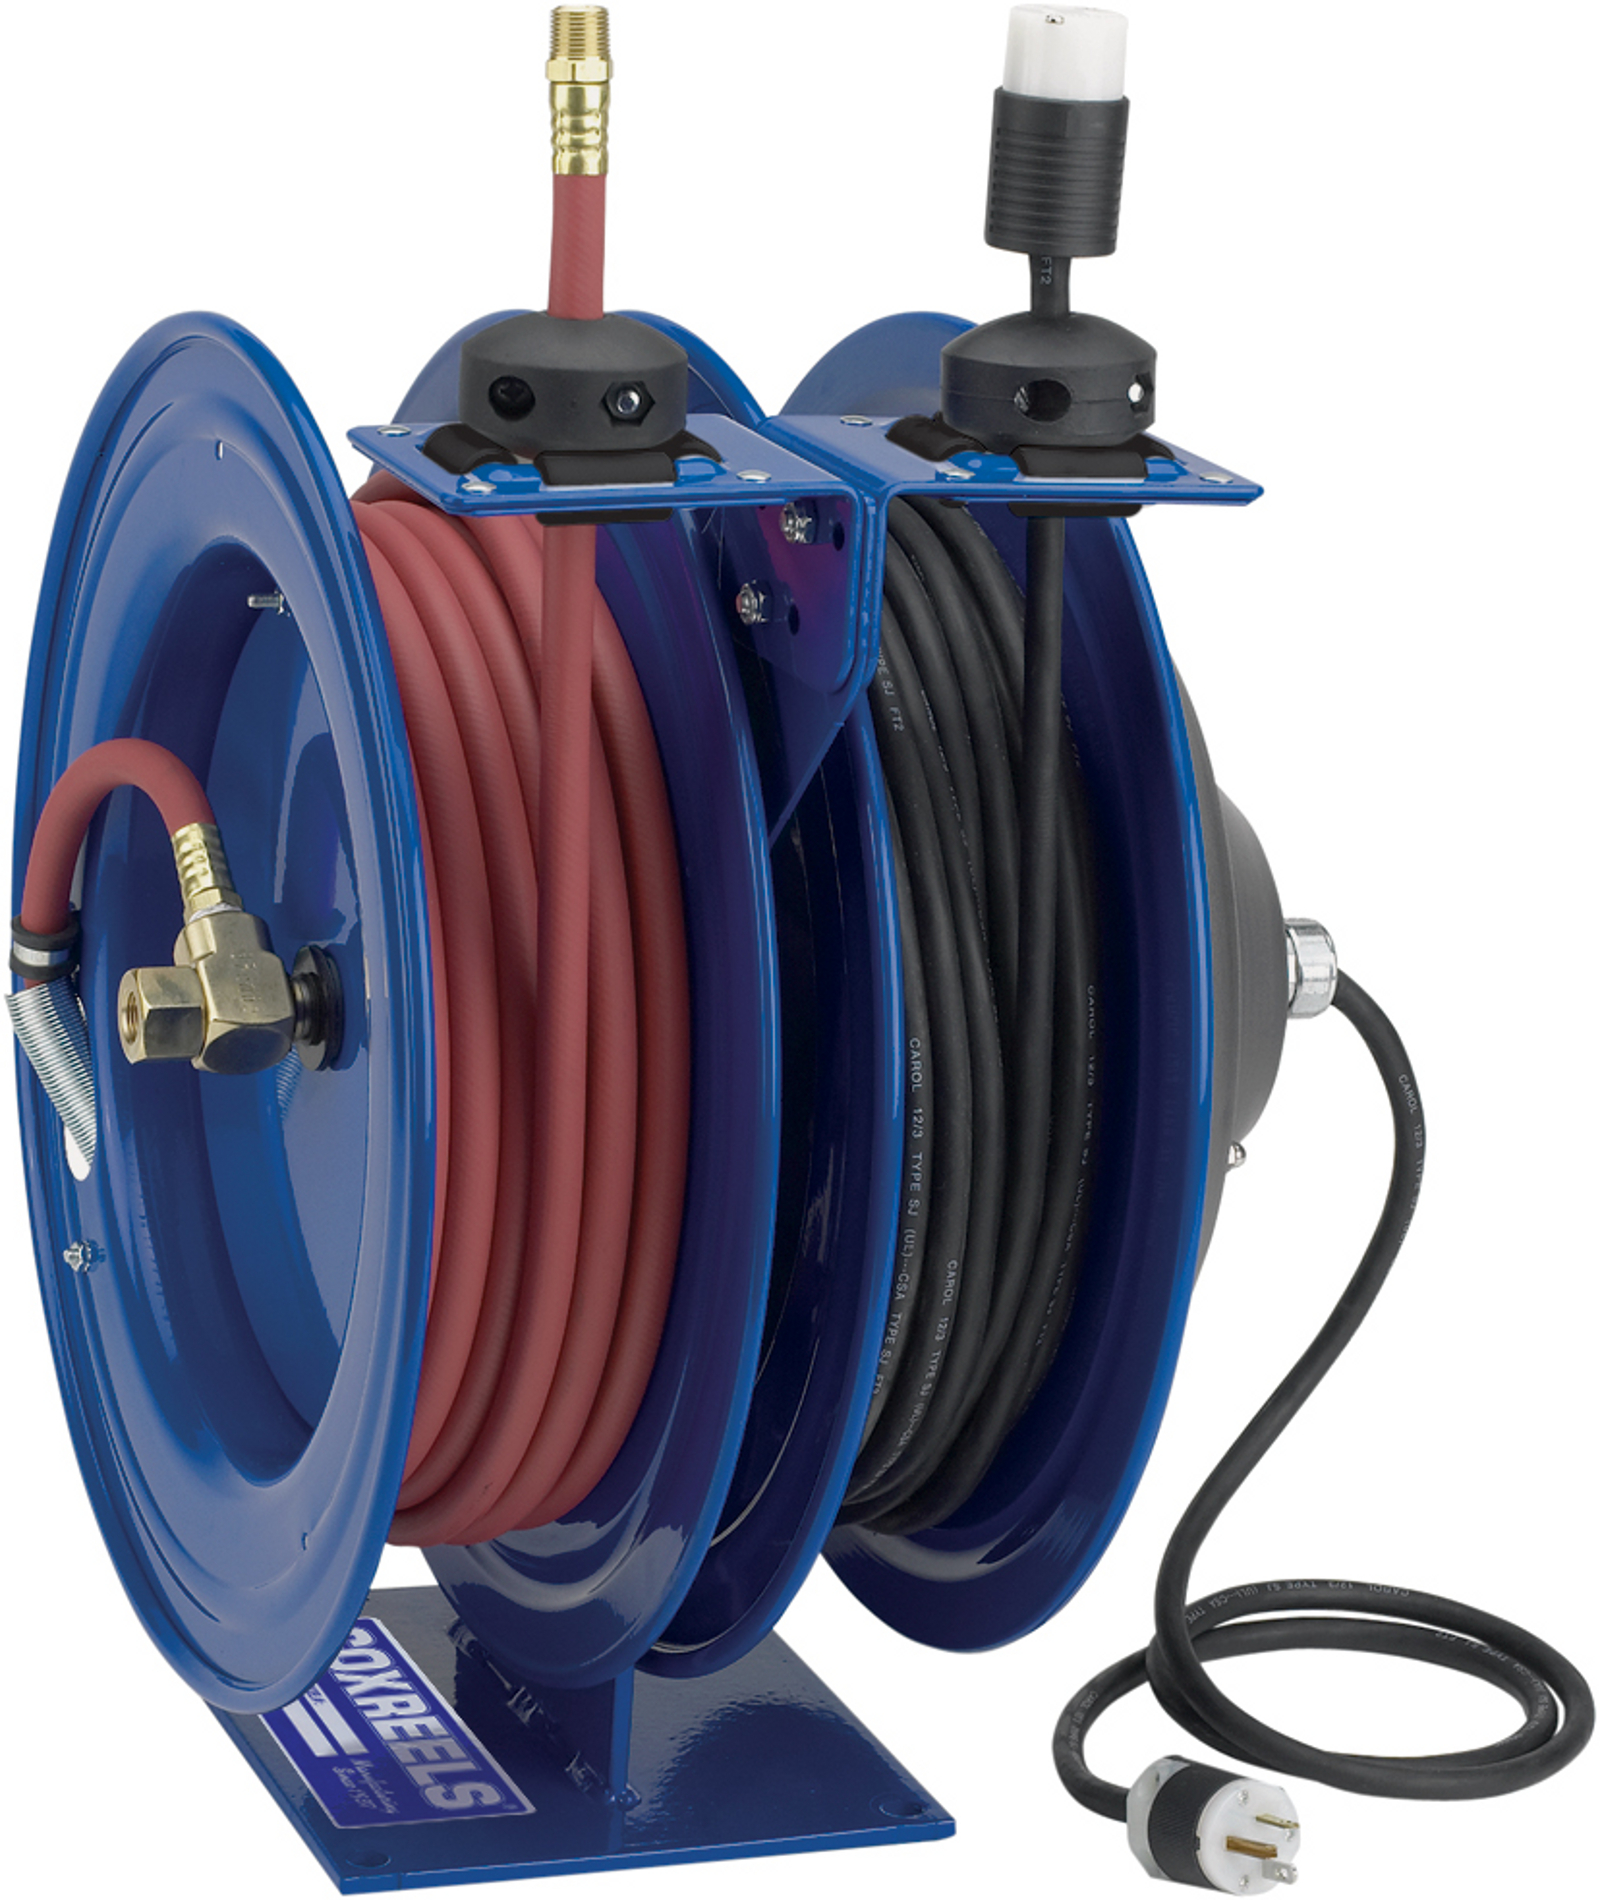 Coxreels Dual Purpose Cord Reel Industrial Reeling Power at 